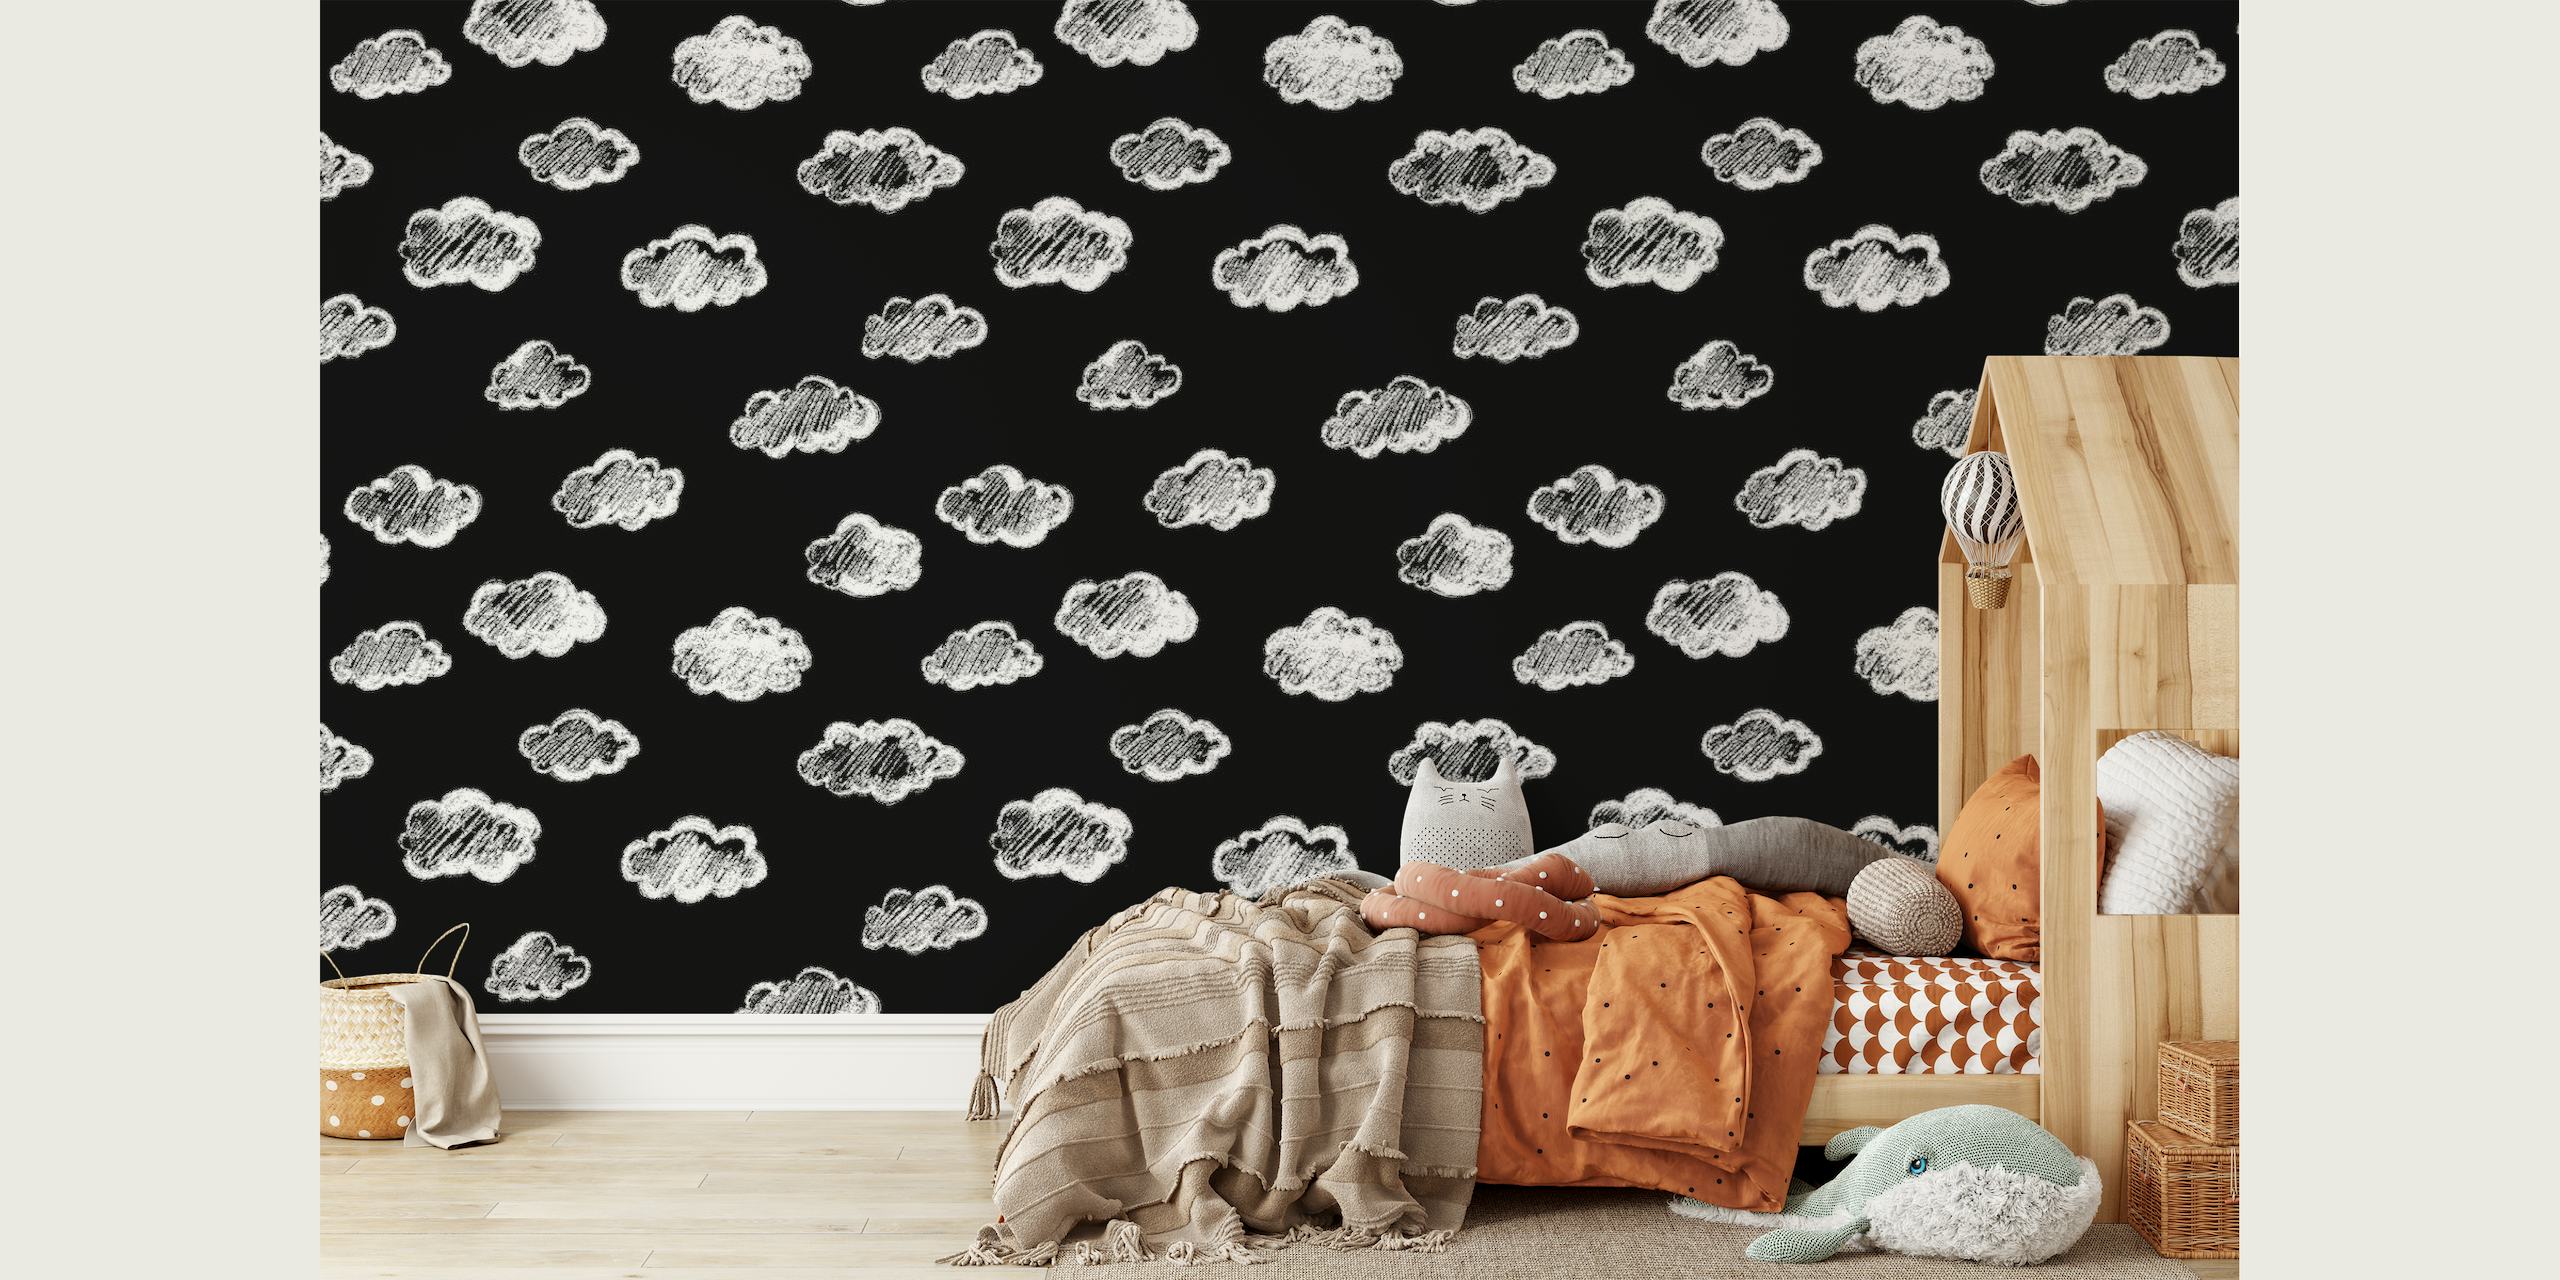 Artystyczna czarna fototapeta z białymi kredowymi motywami chmur ze strony happywall.com